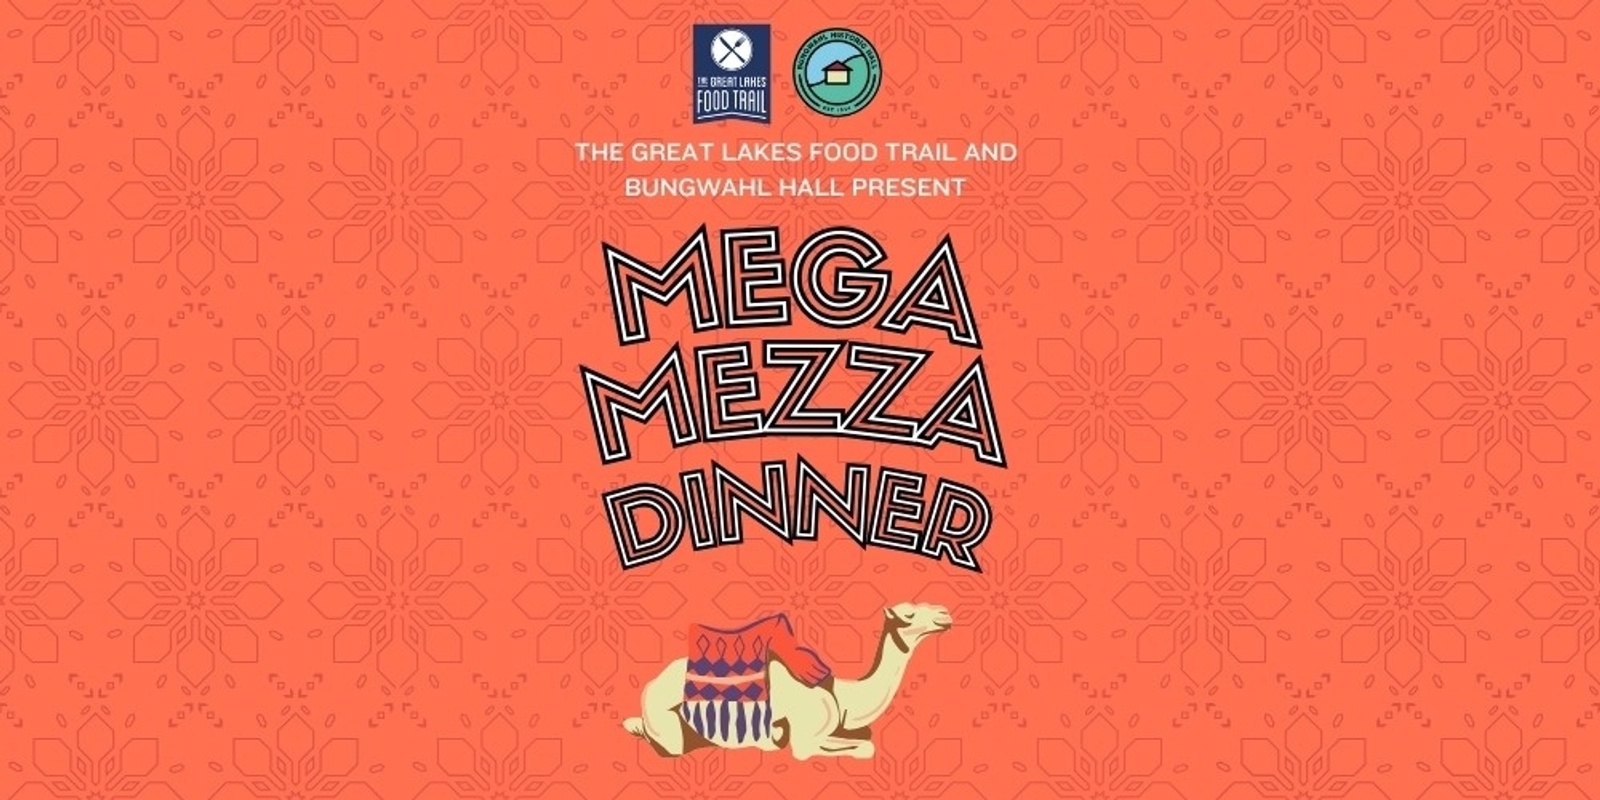 Banner image for Mega Mezza Dinner